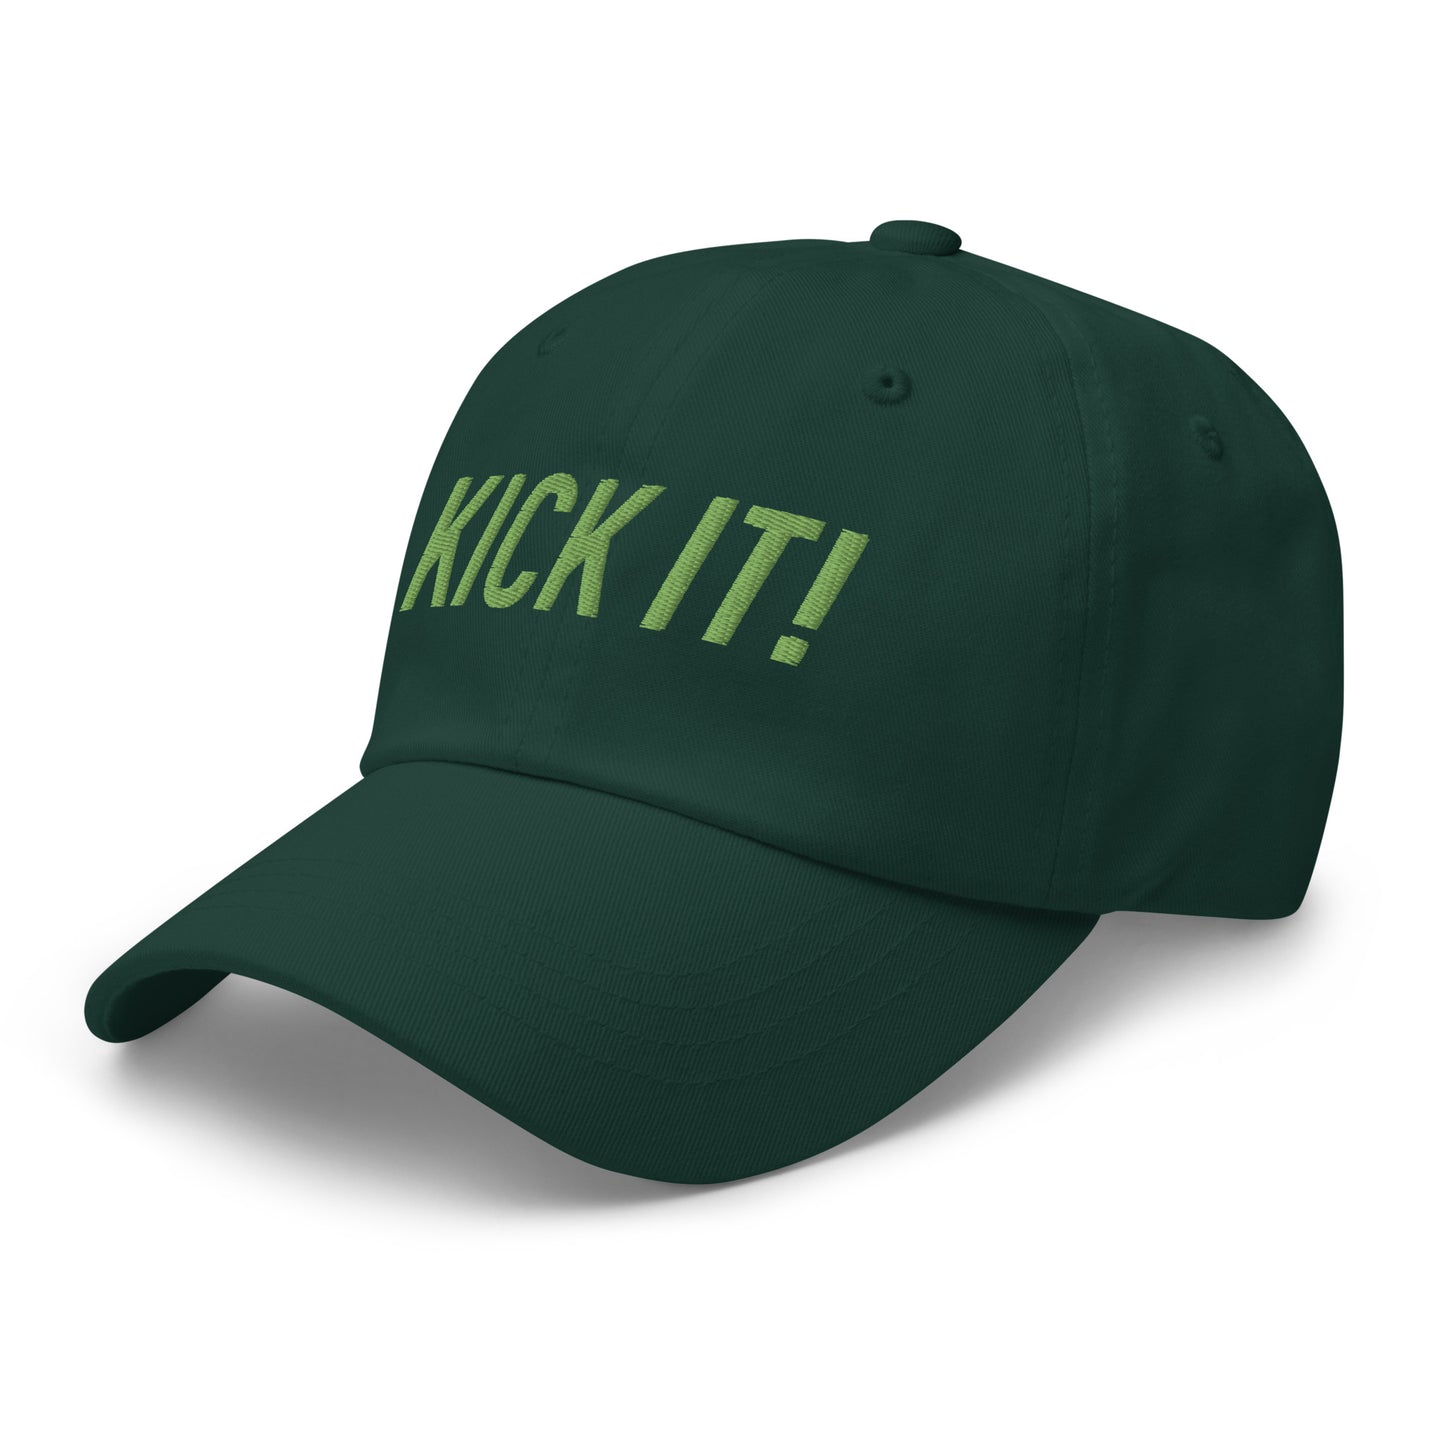 Kick it! Dad hat - Kiwi green letters